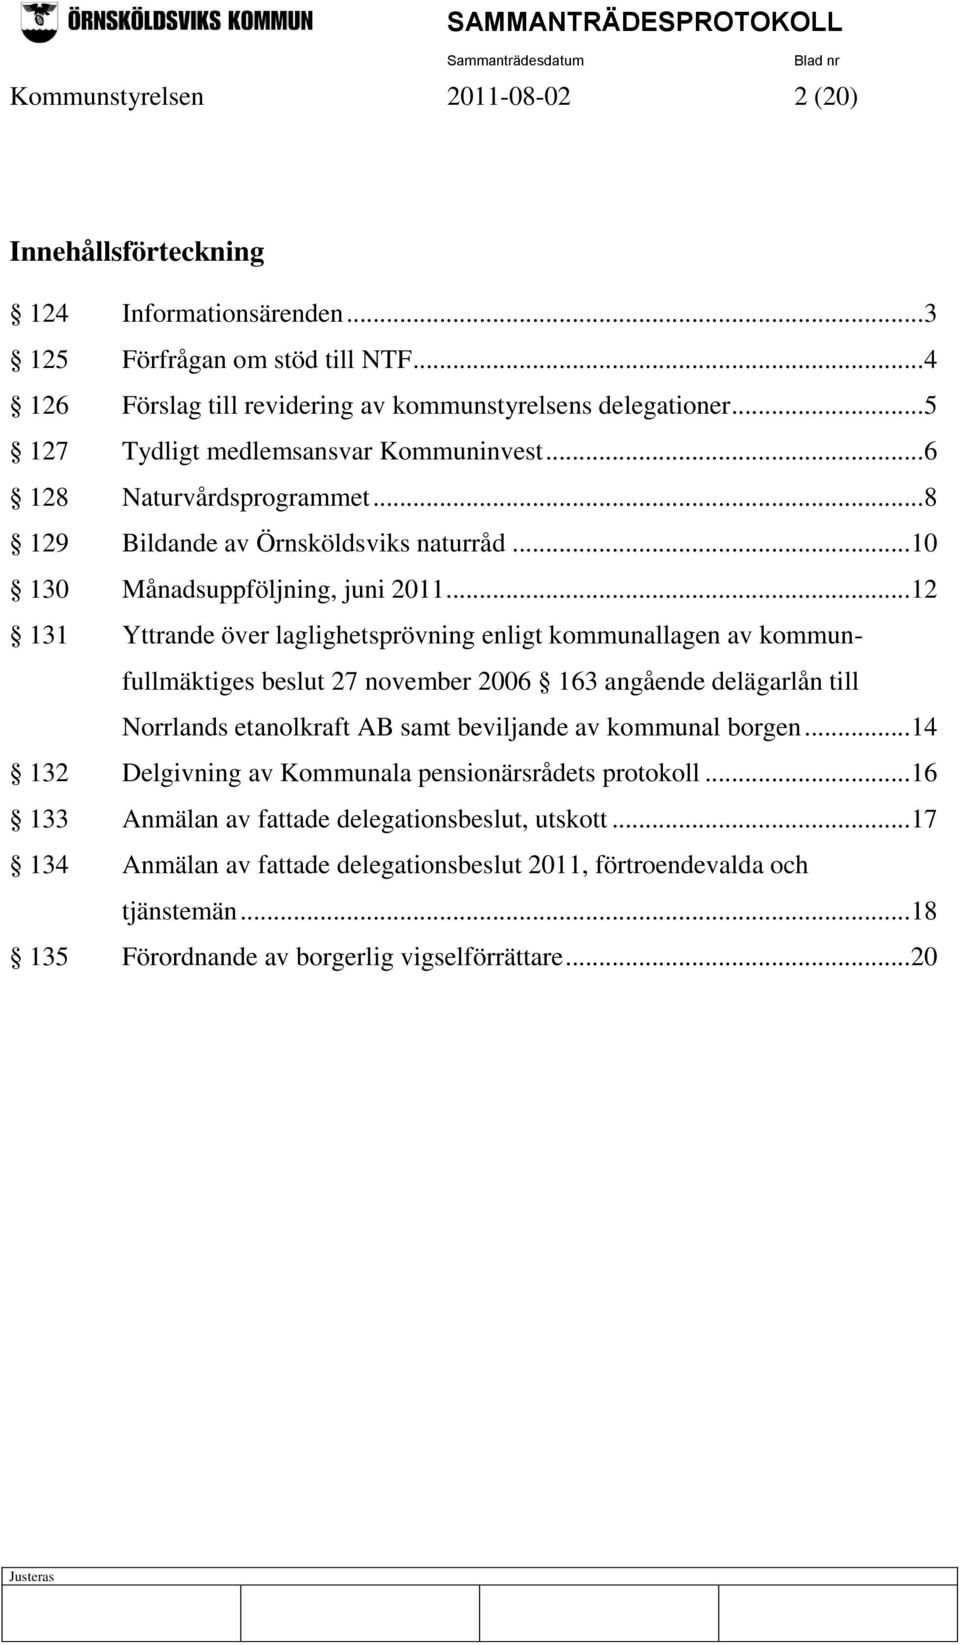 .. 12 131 Yttrande över laglighetsprövning enligt kommunallagen av kommunfullmäktiges beslut 27 november 2006 163 angående delägarlån till Norrlands etanolkraft AB samt beviljande av kommunal borgen.